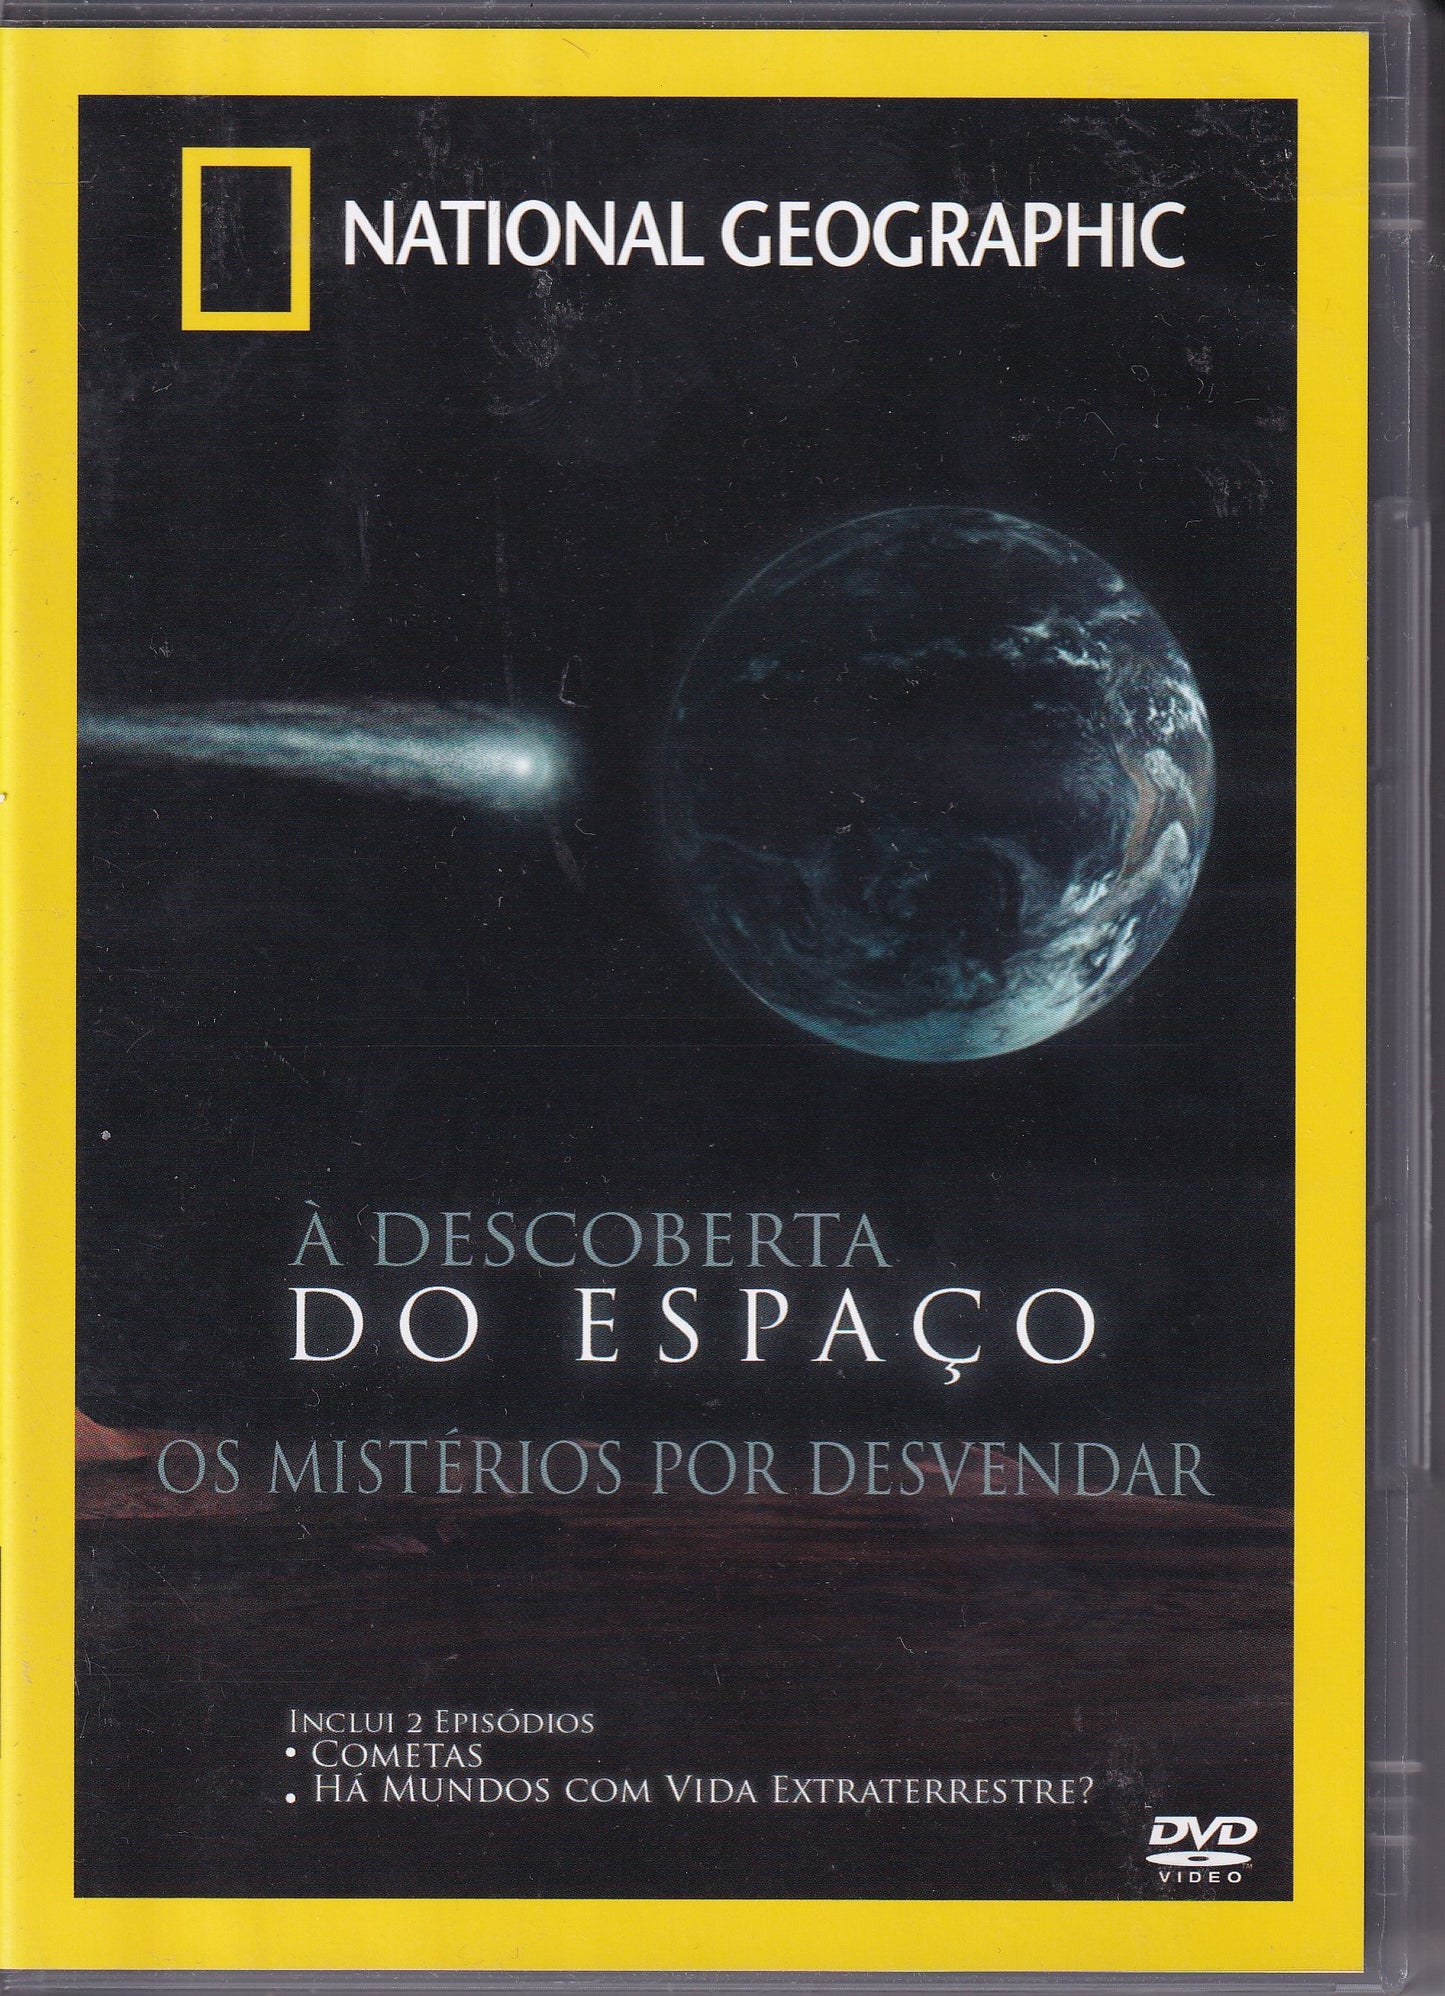 DVD NATIONAL GEOGRAPHIC À DESCOBERTA DO ESPAÇO - OS MISTÉRIOS POR DESVENDAR - USADO